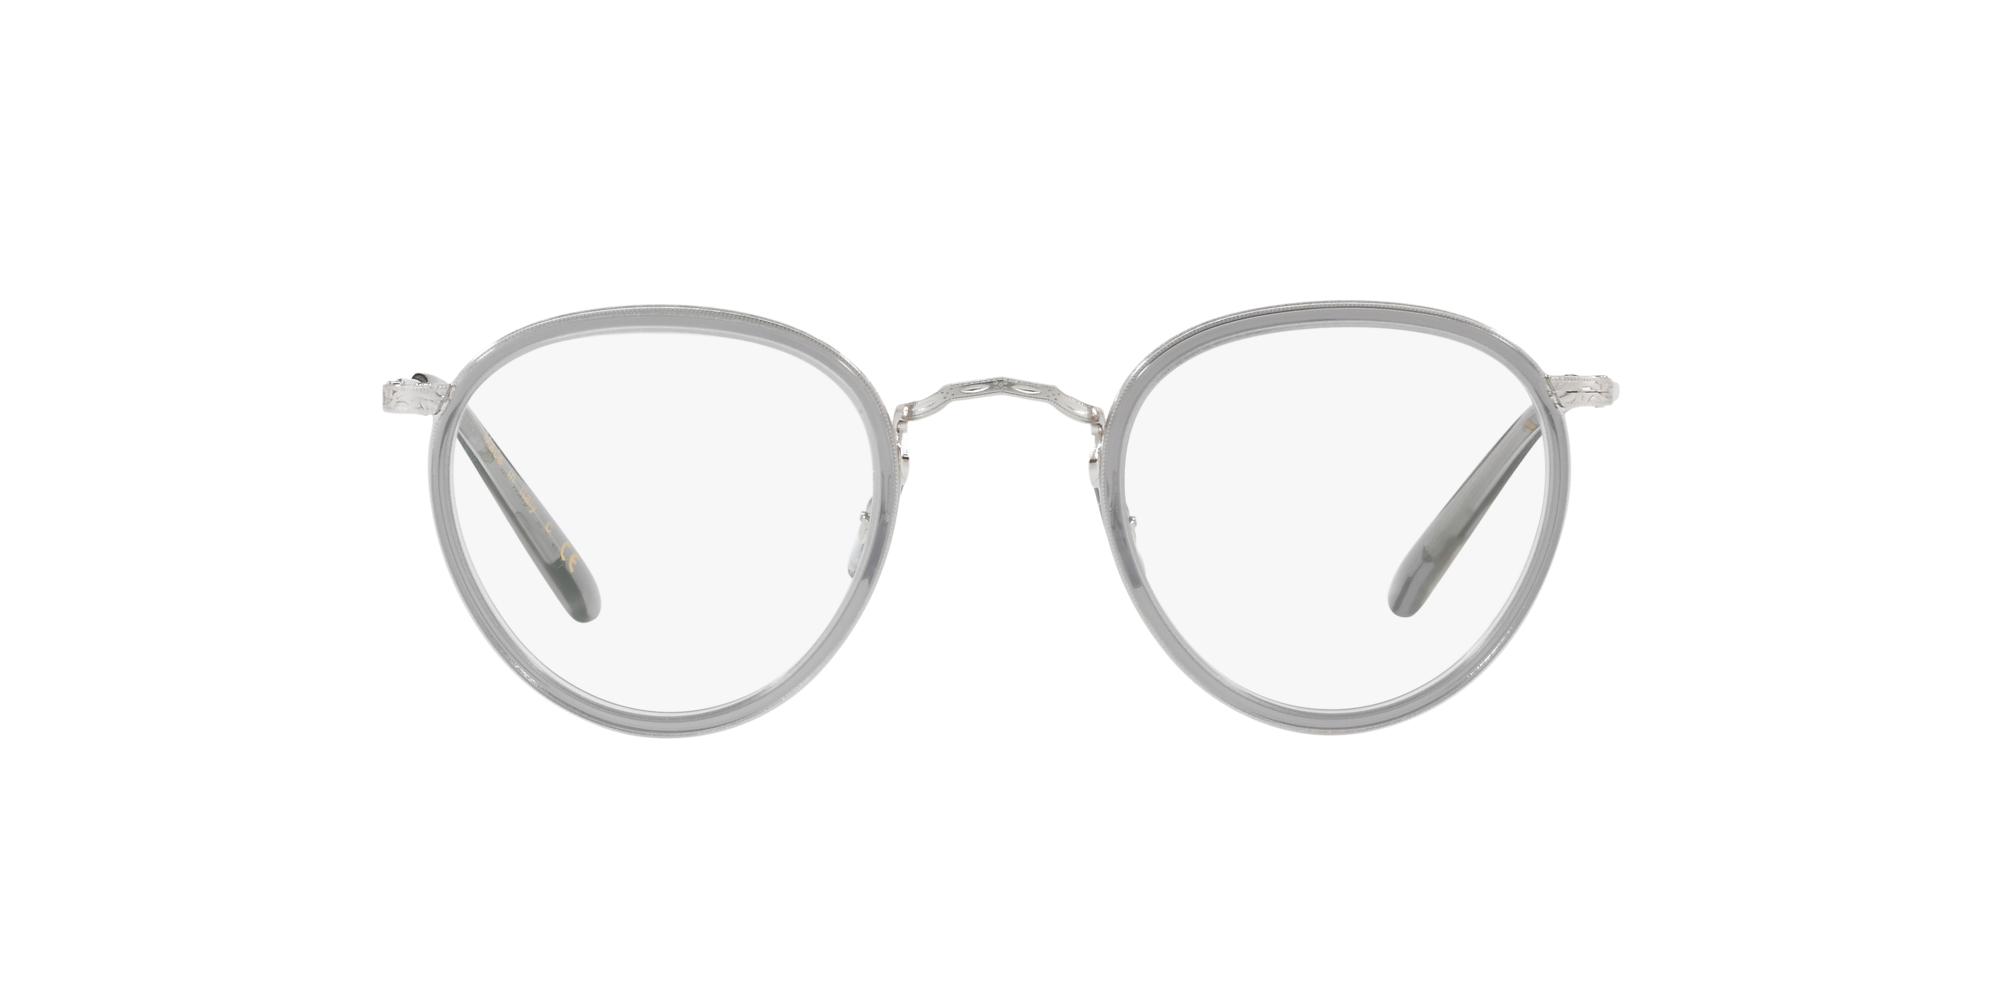 Ov1104 Eyeglasses Workman Grey Brushed Silver Oliver Peoples Uk